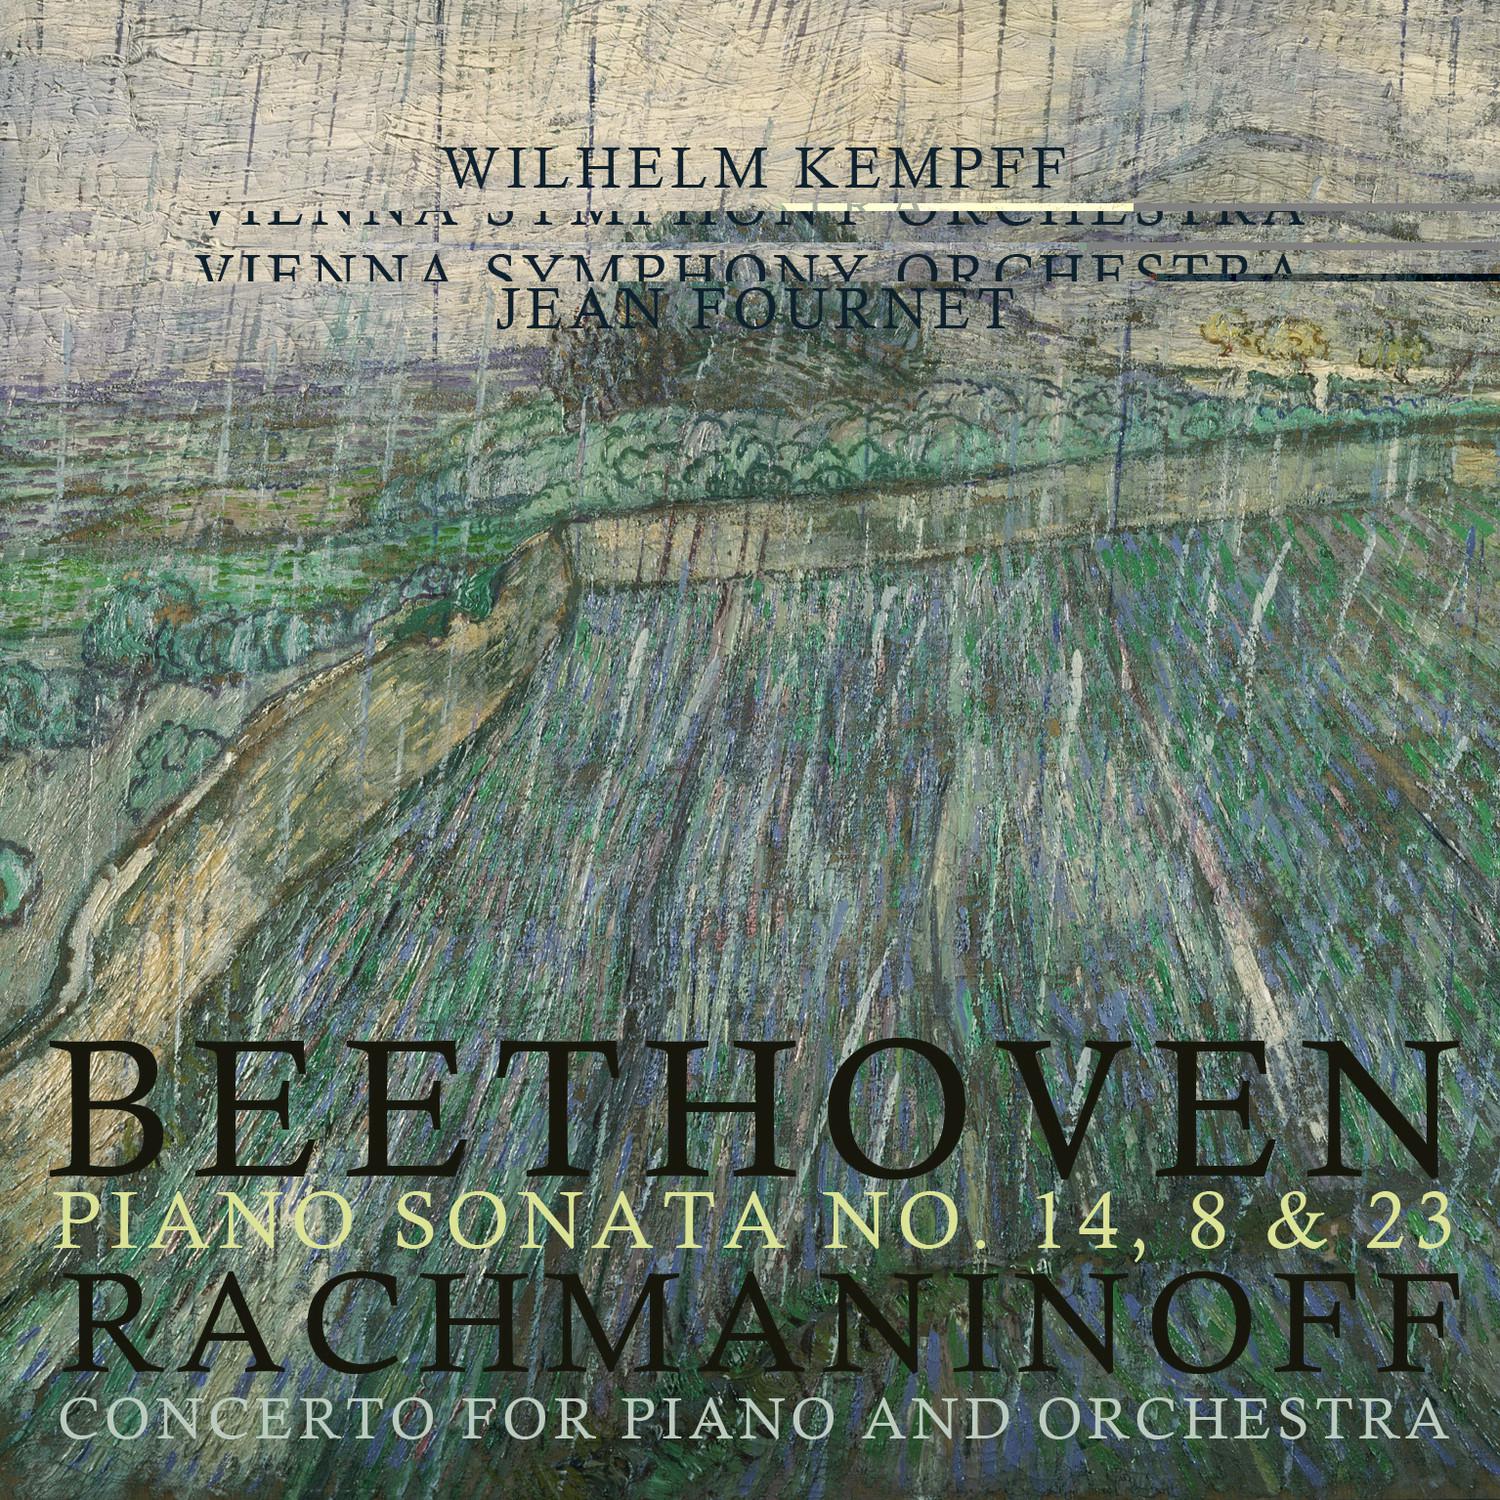 Beethoven: Piano Sonata No. 14, 8 & 23 - Rachmaninoff: Concerto for Piano and Orchestra